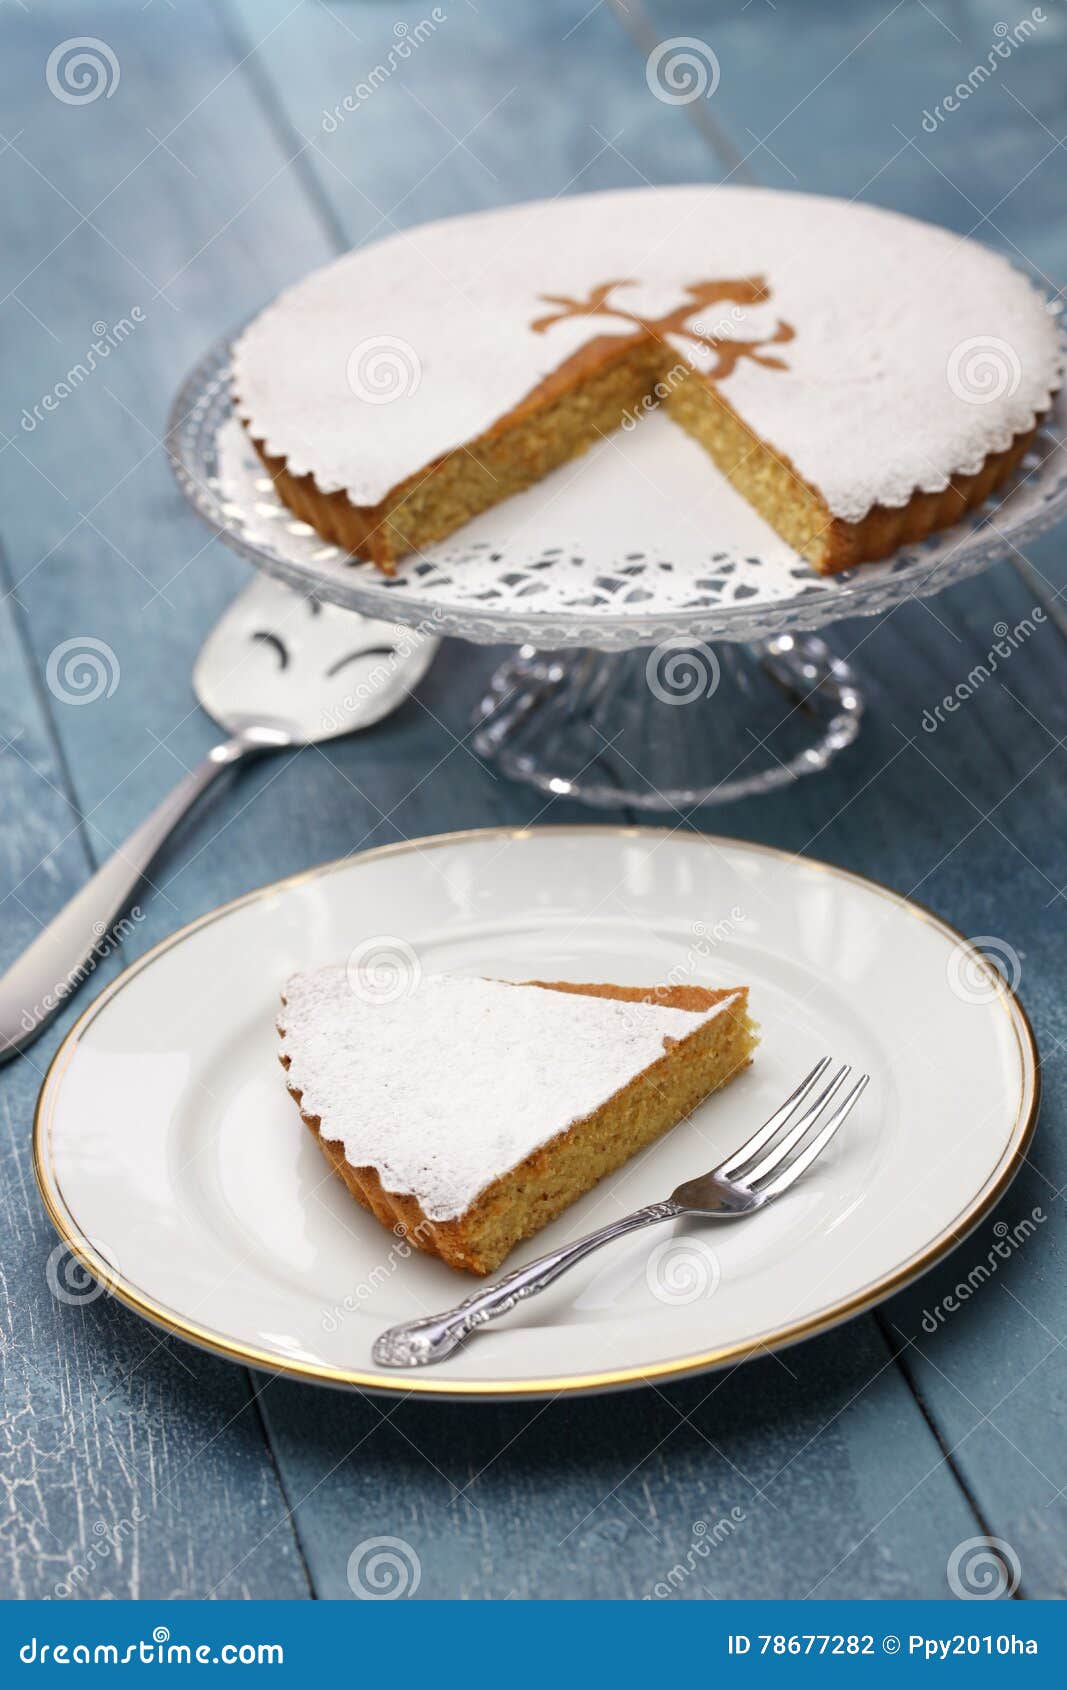 tarta de santiago, spanish almond cake